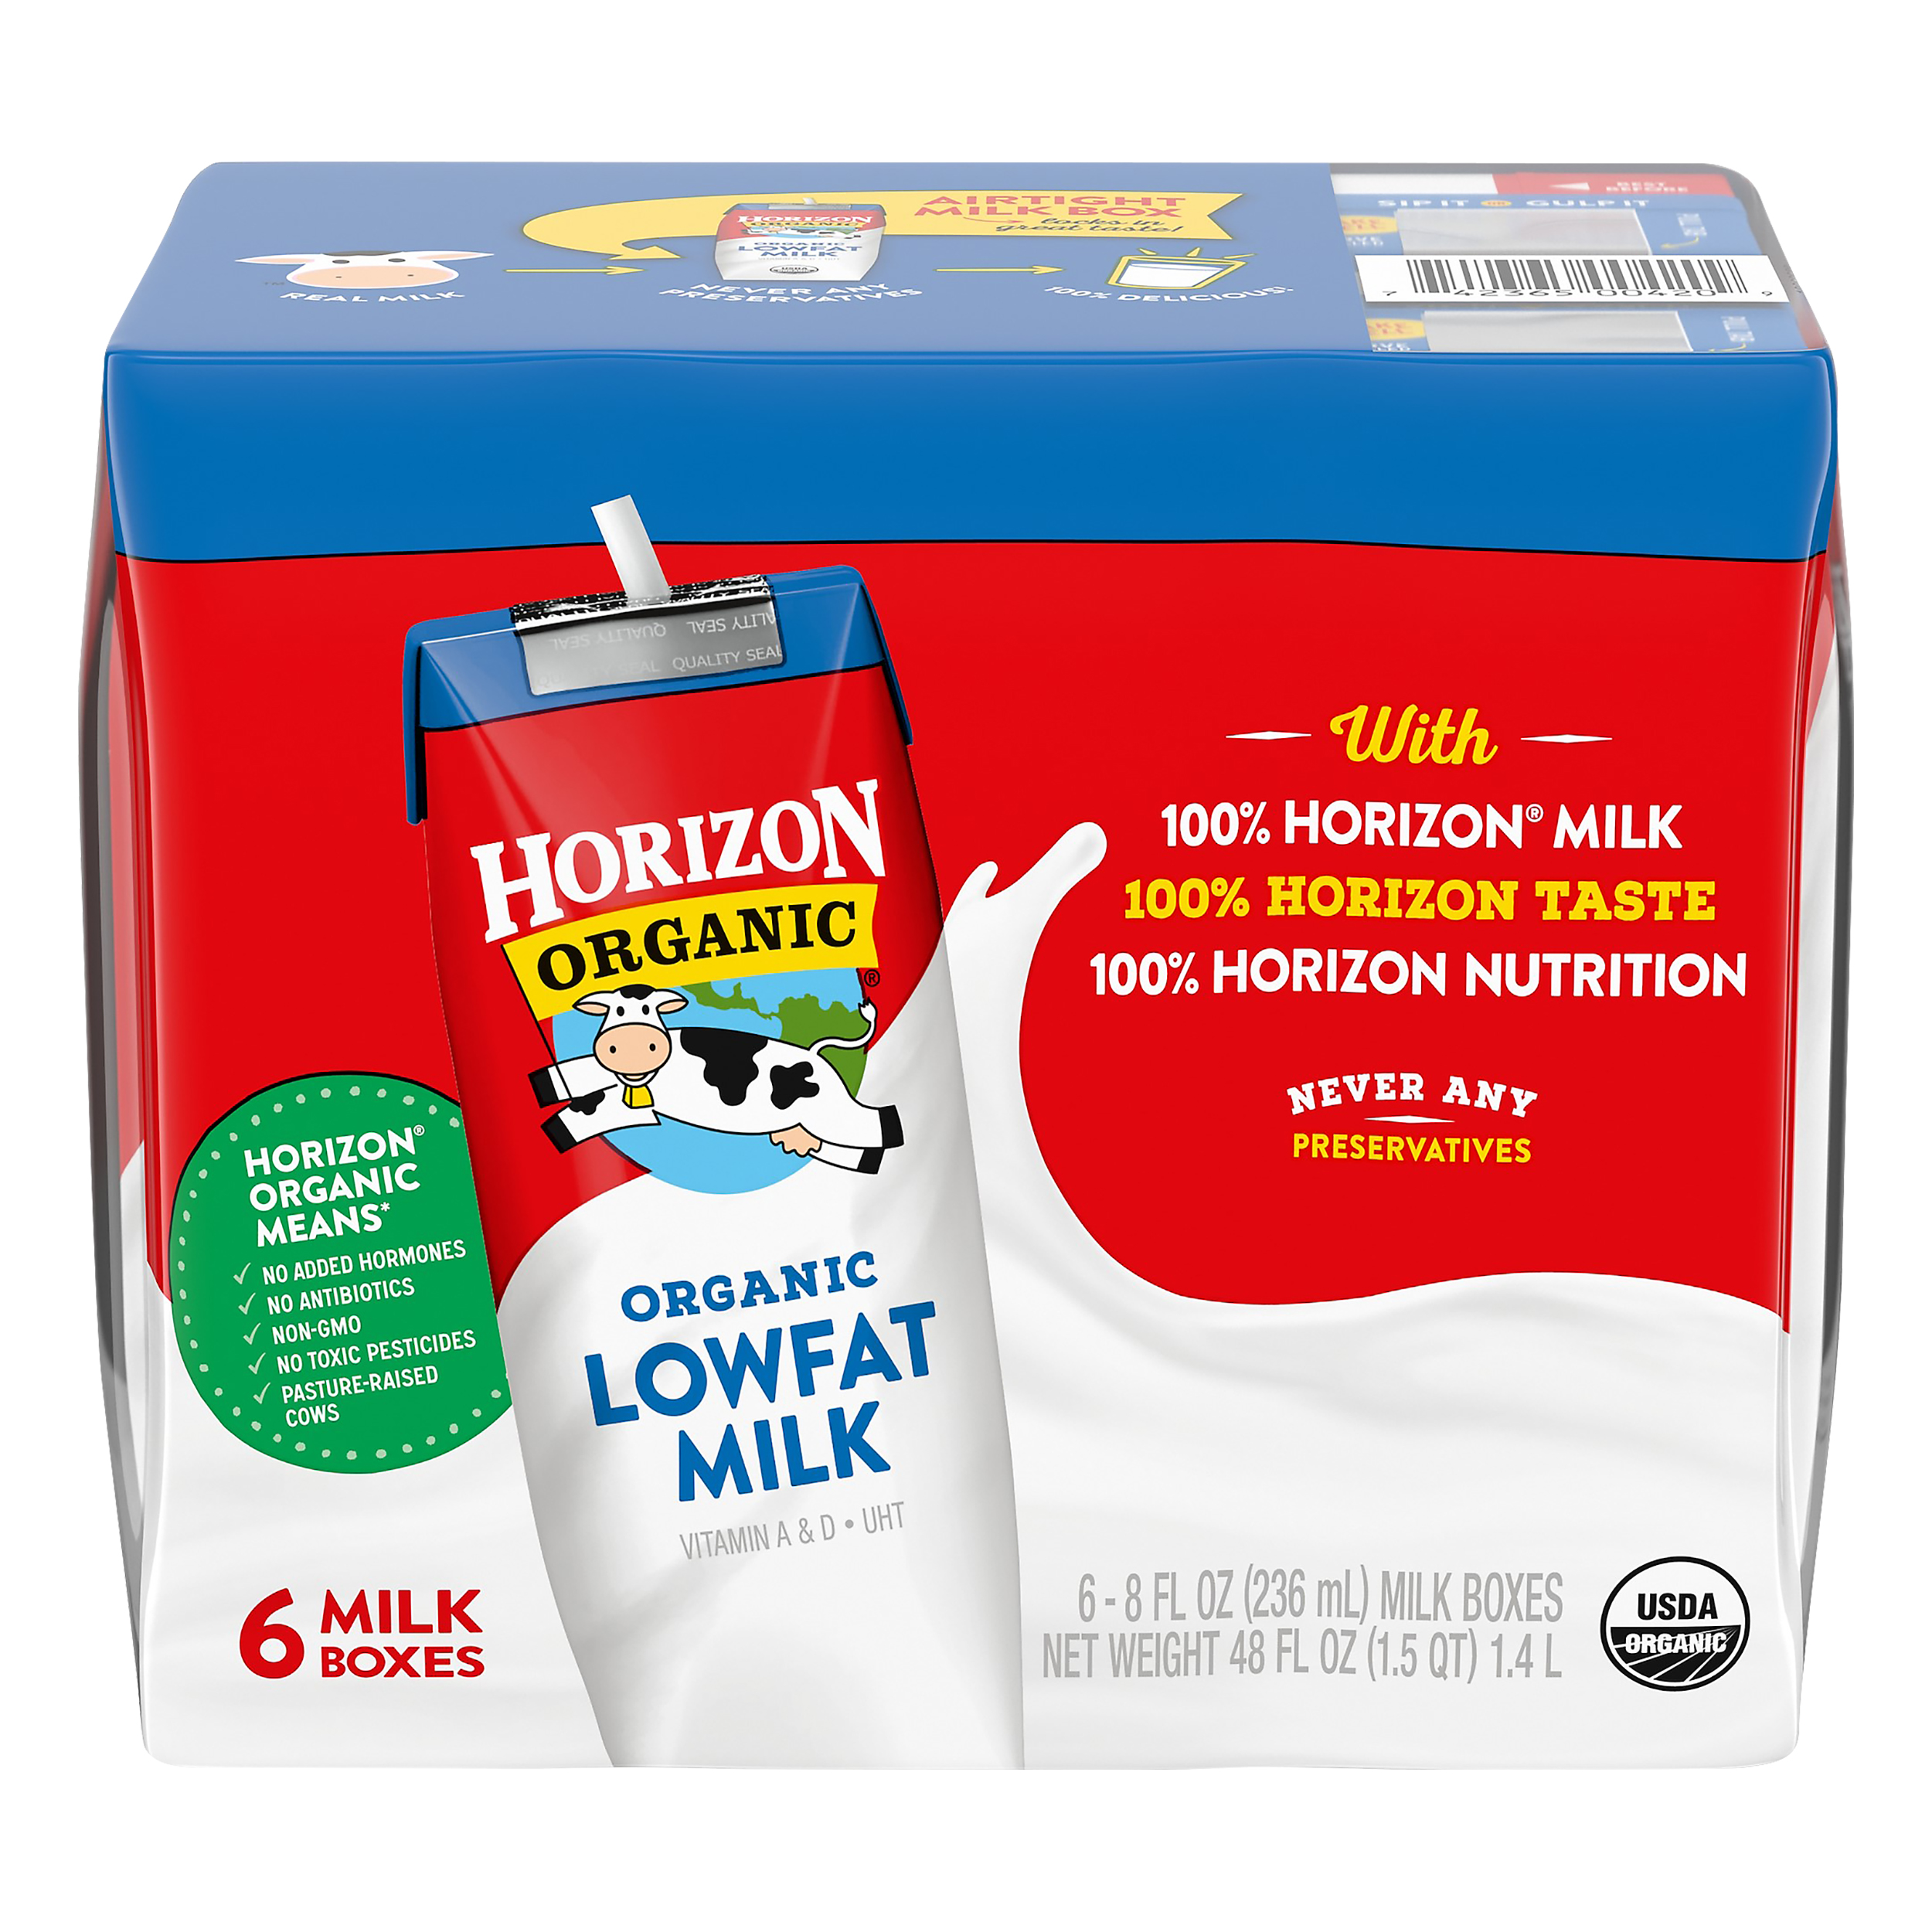 Horizon Organic 1% Lowfat Milk 3 innerpacks per case 48.0 fl